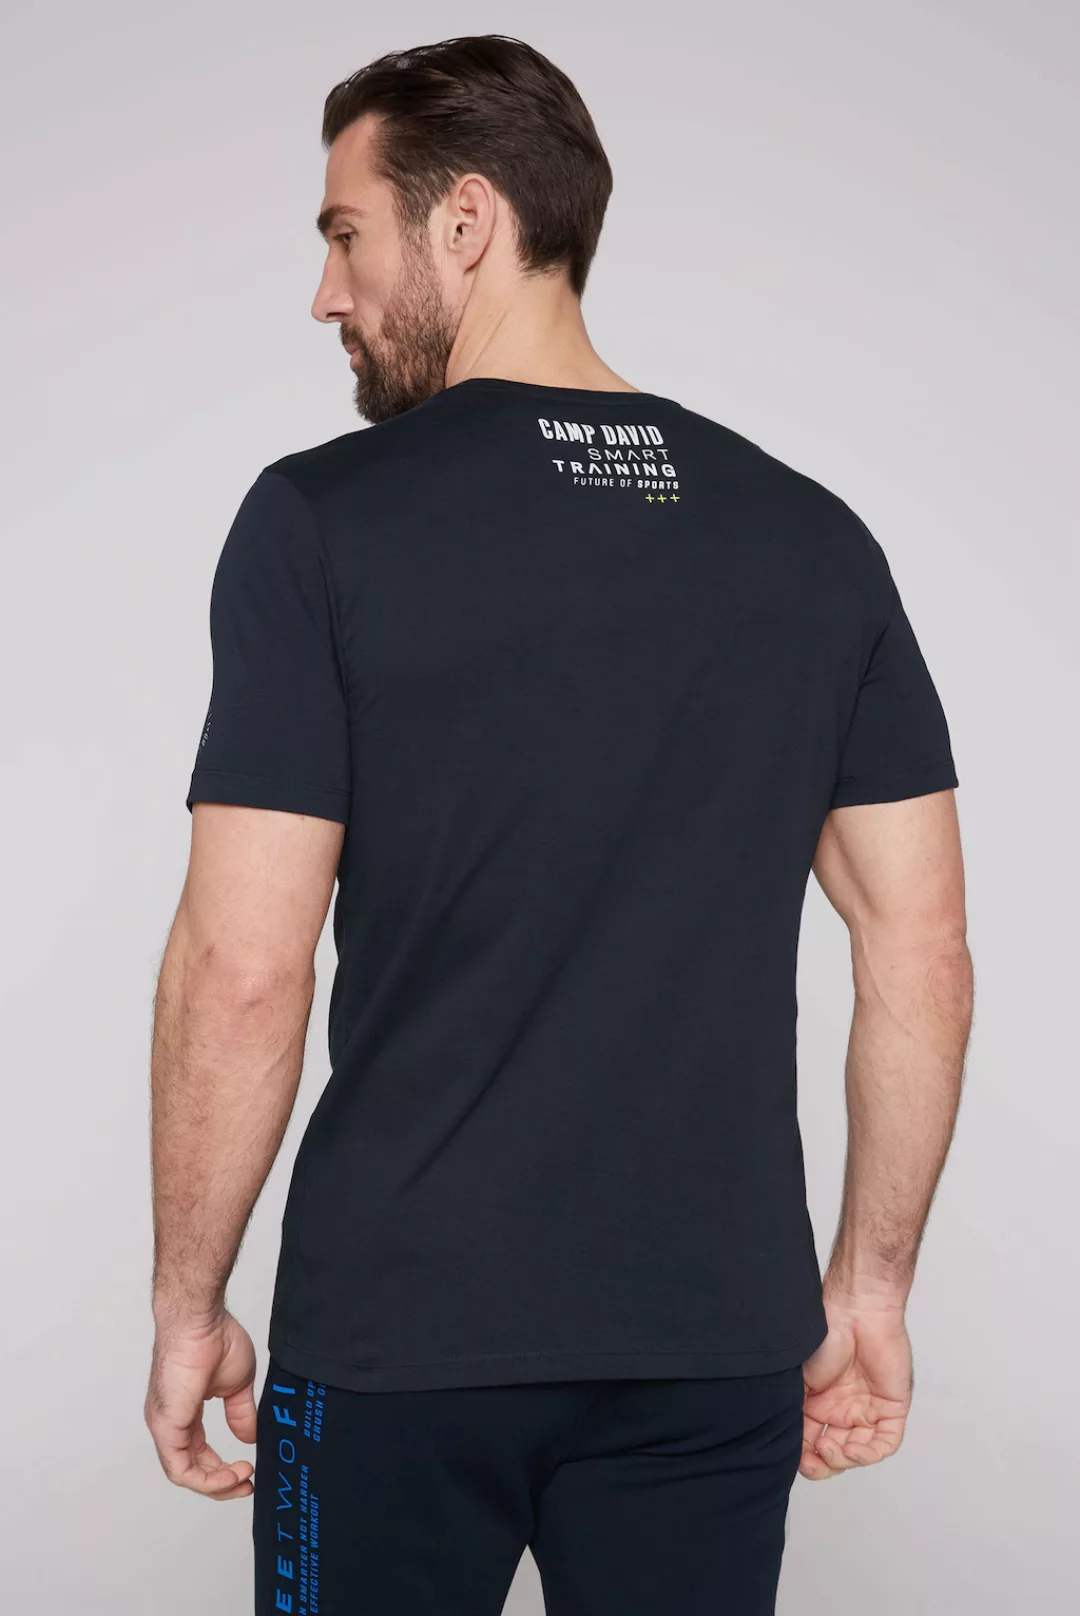 CAMP DAVID T-Shirt mit kontrastreichen Prints günstig online kaufen